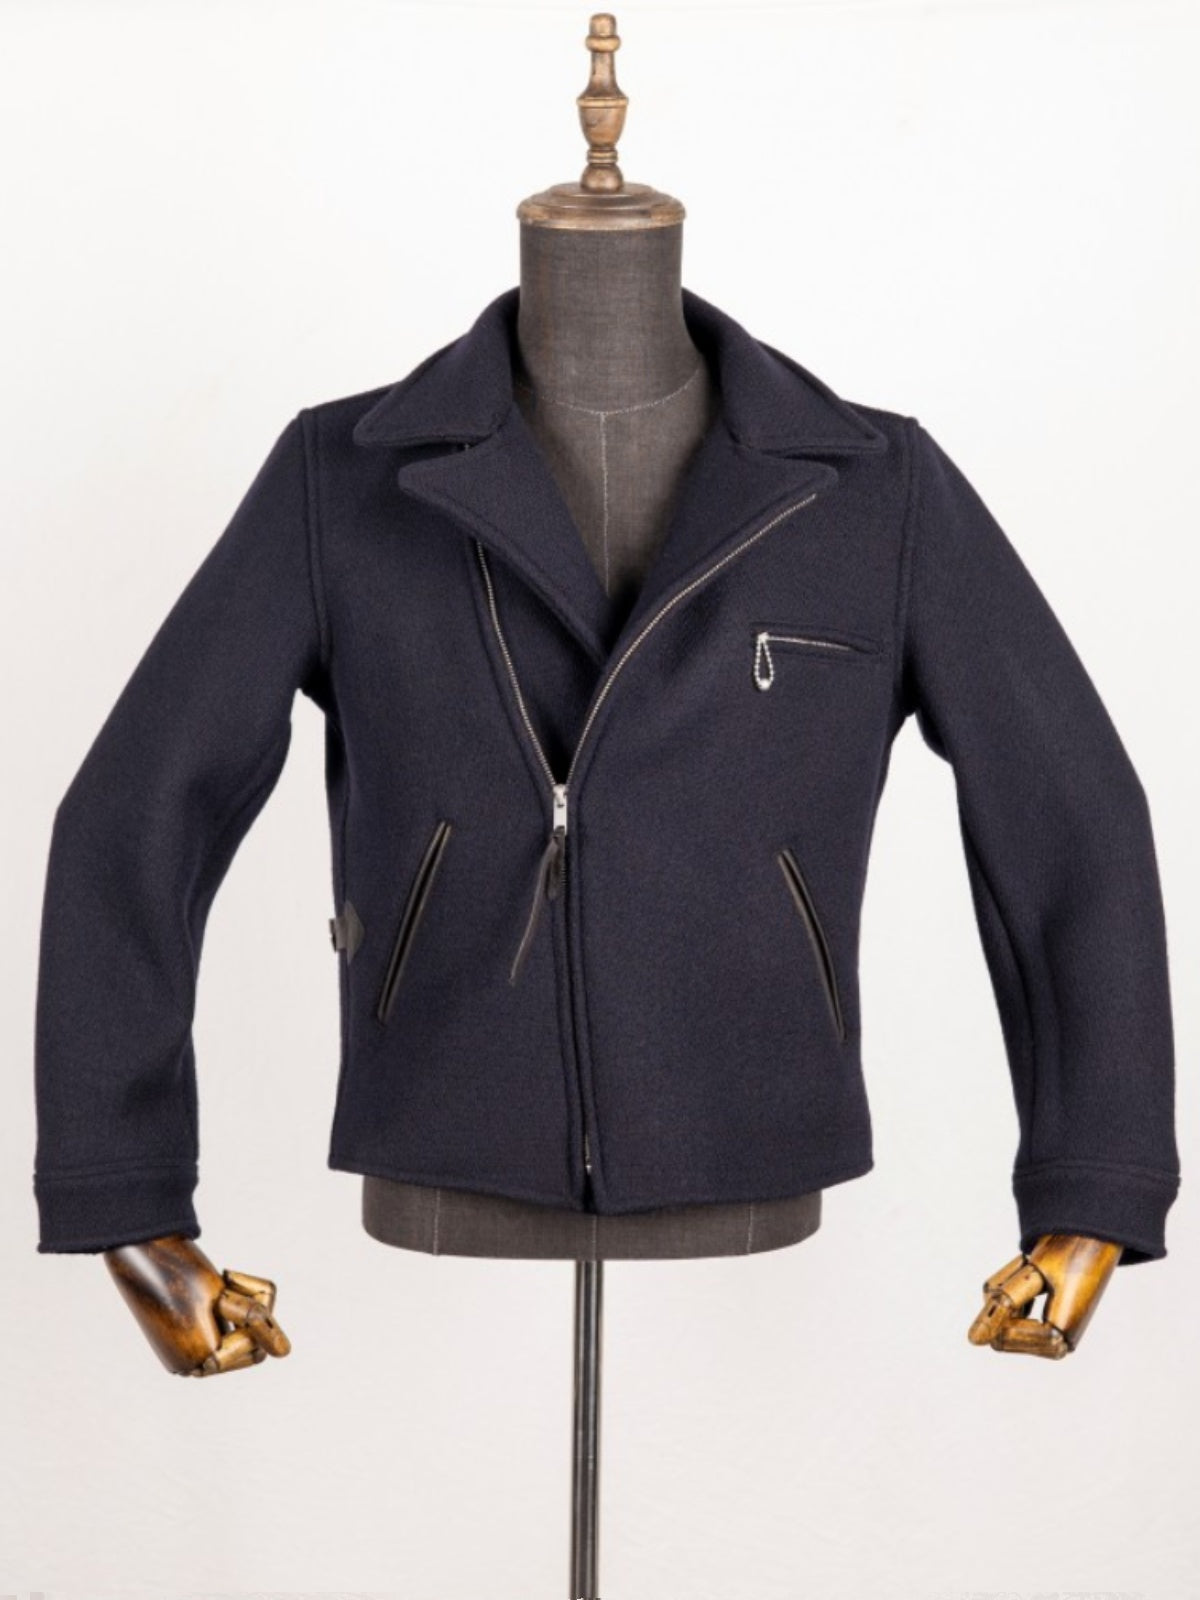 Men's 1930s Wool Sports Jacket